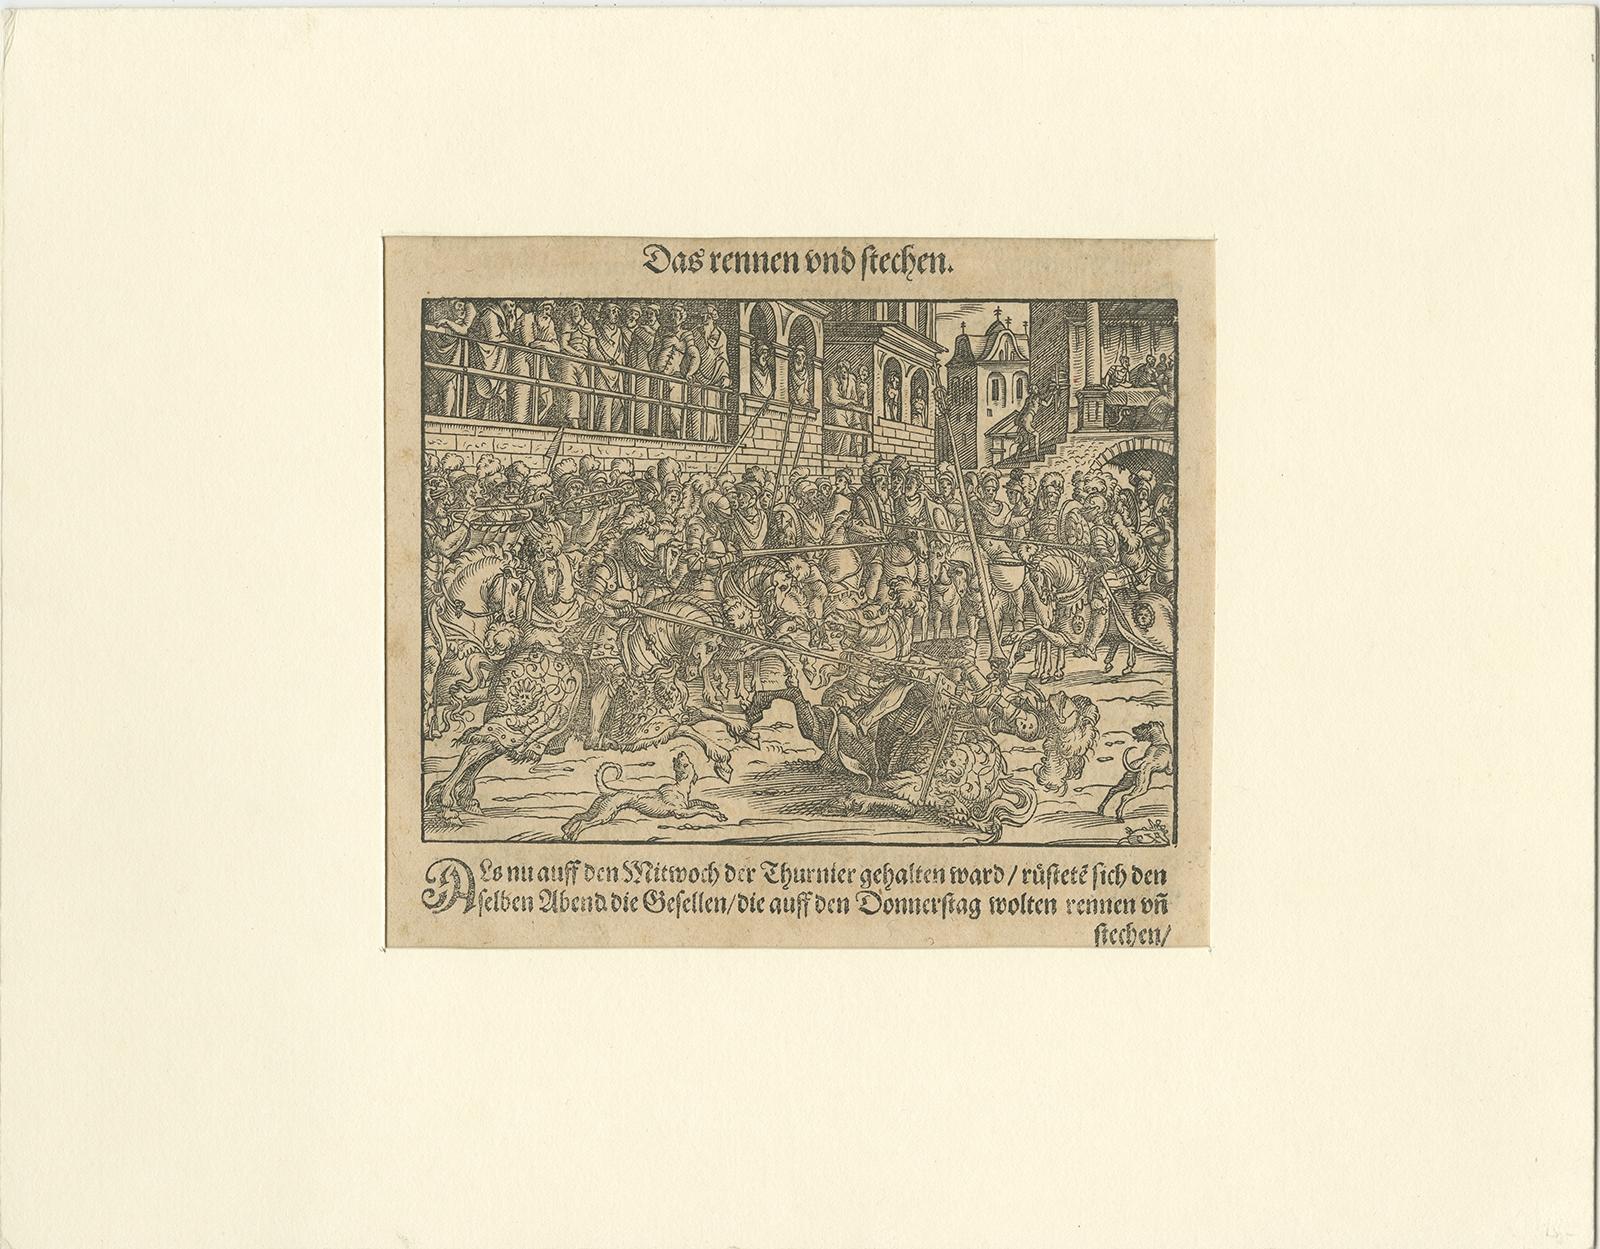 Antique print titled 'Das rennen und stechen'. 

Engraving of a Medieval tournament. This print originates from 'Thurnier Buch. Von Anfang, Ursachen, ursprung und herkommen (..)' by Georg Rüxner. 

Artists and Engravers: The Thurnierbuch